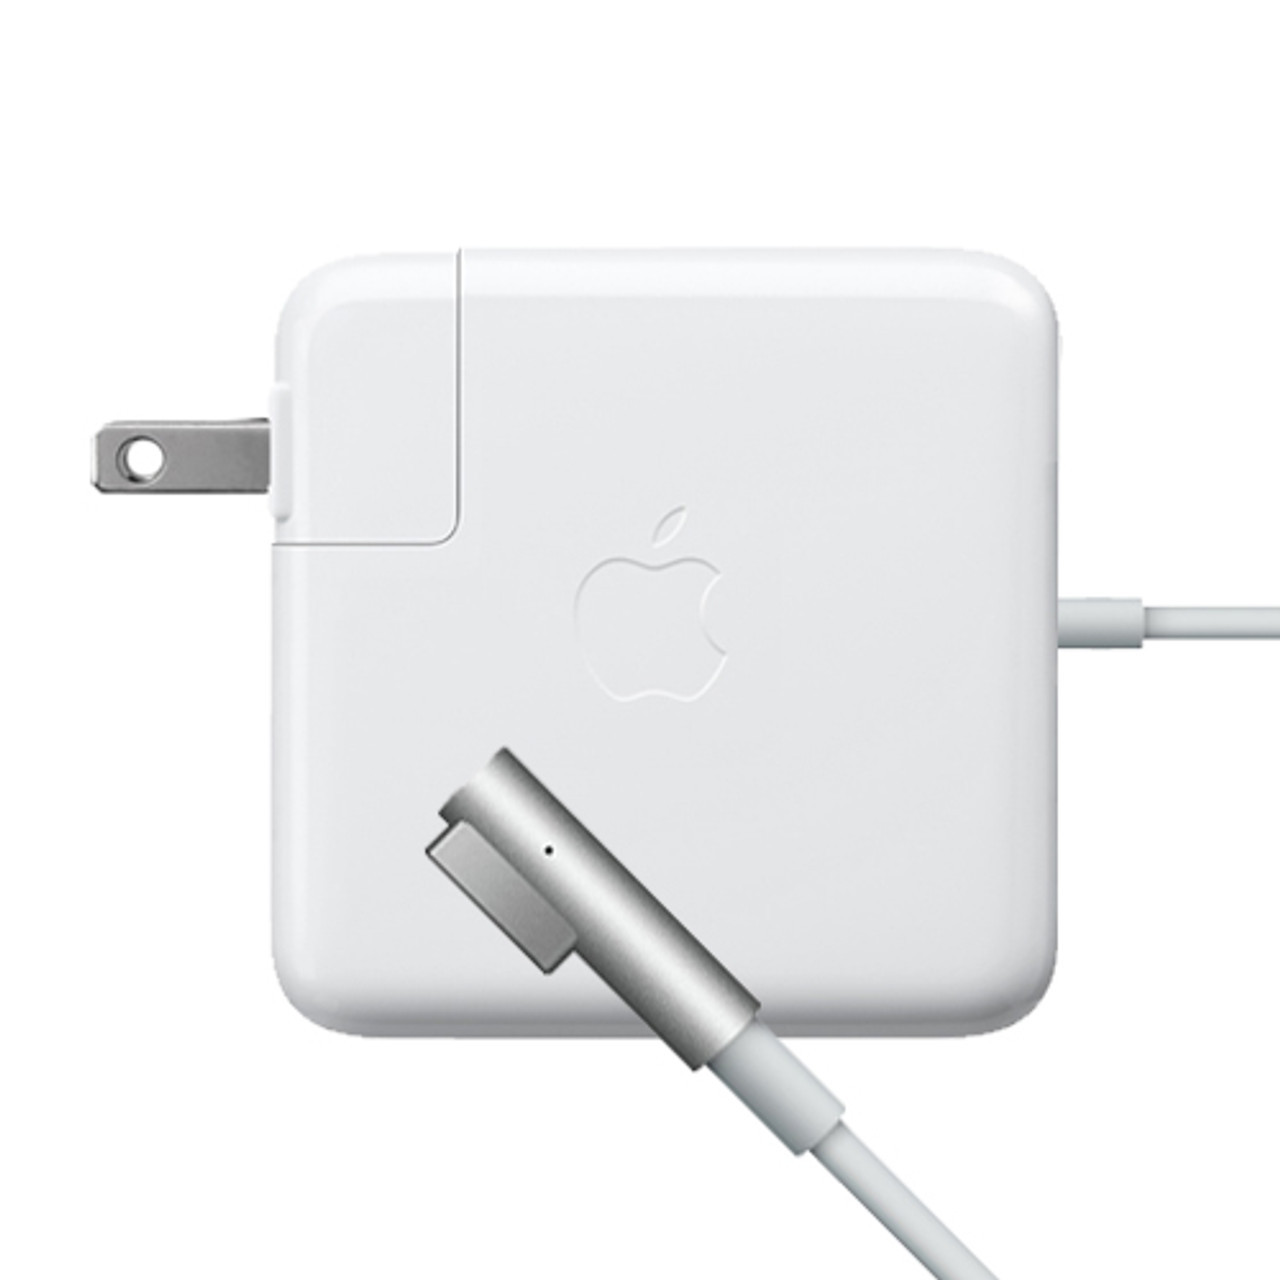 mid 2009 macbook pro charger work 2015 macbook